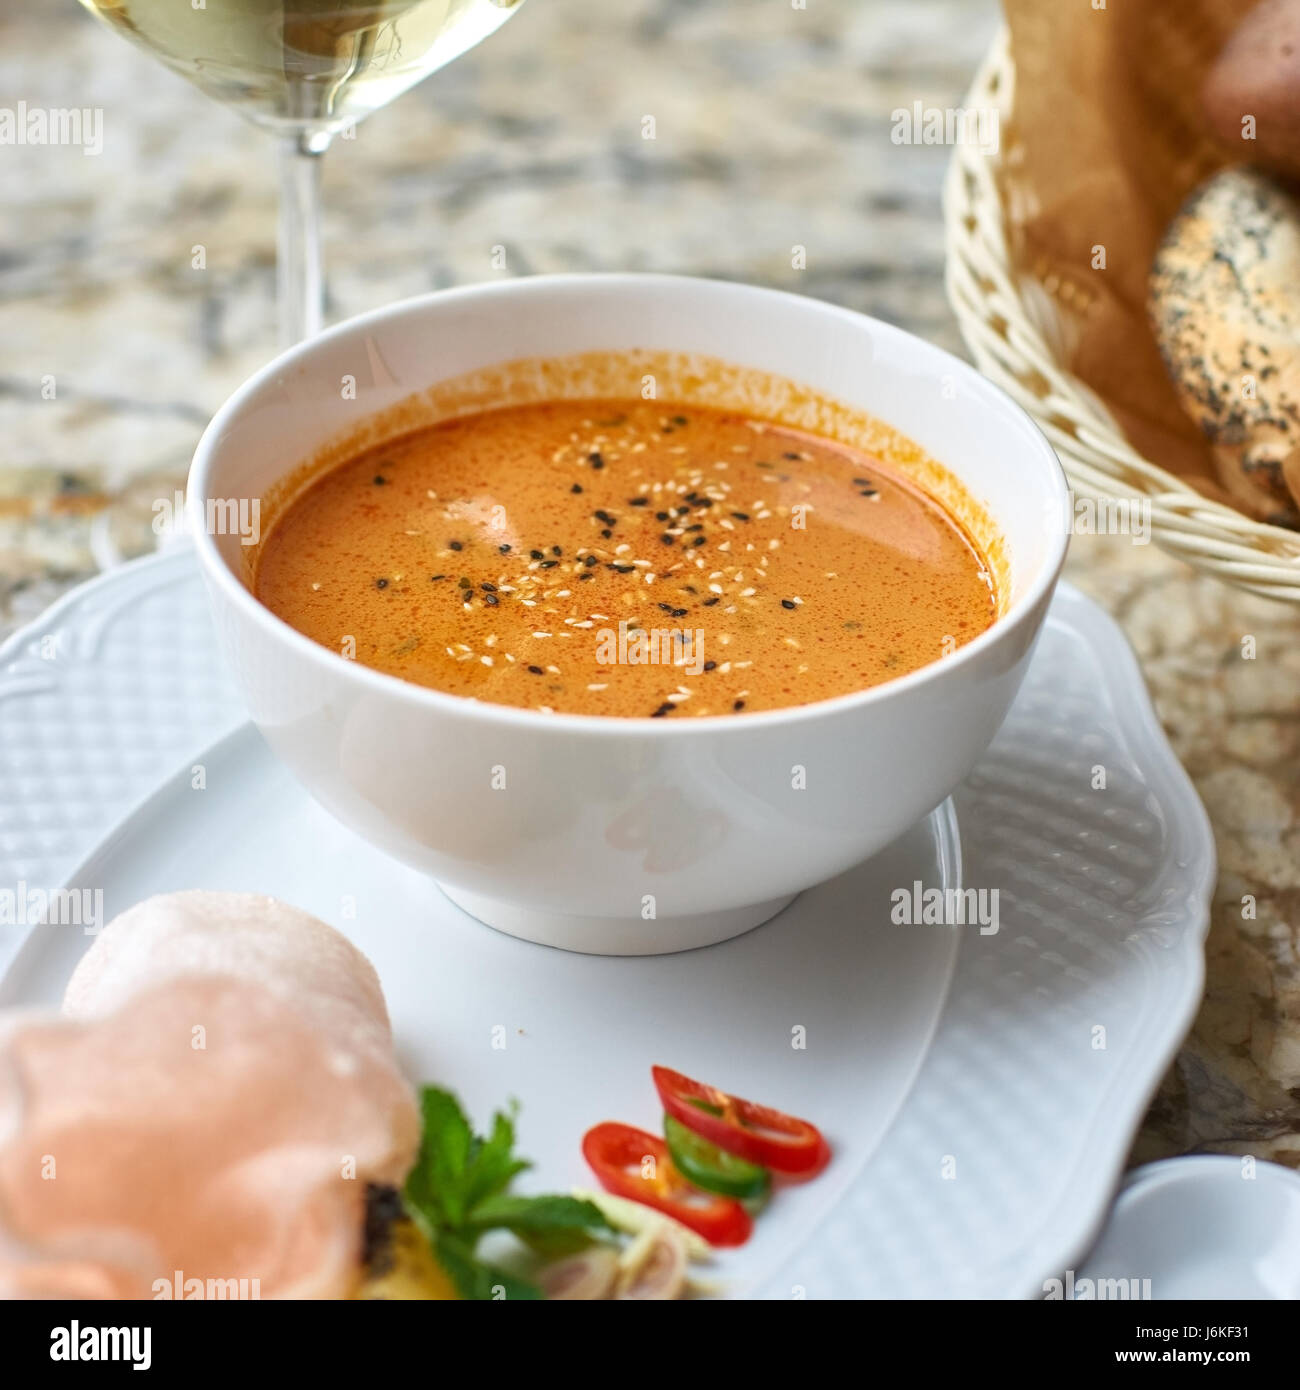 Peranakan cuisine. Singapore Laksa soup Stock Photo